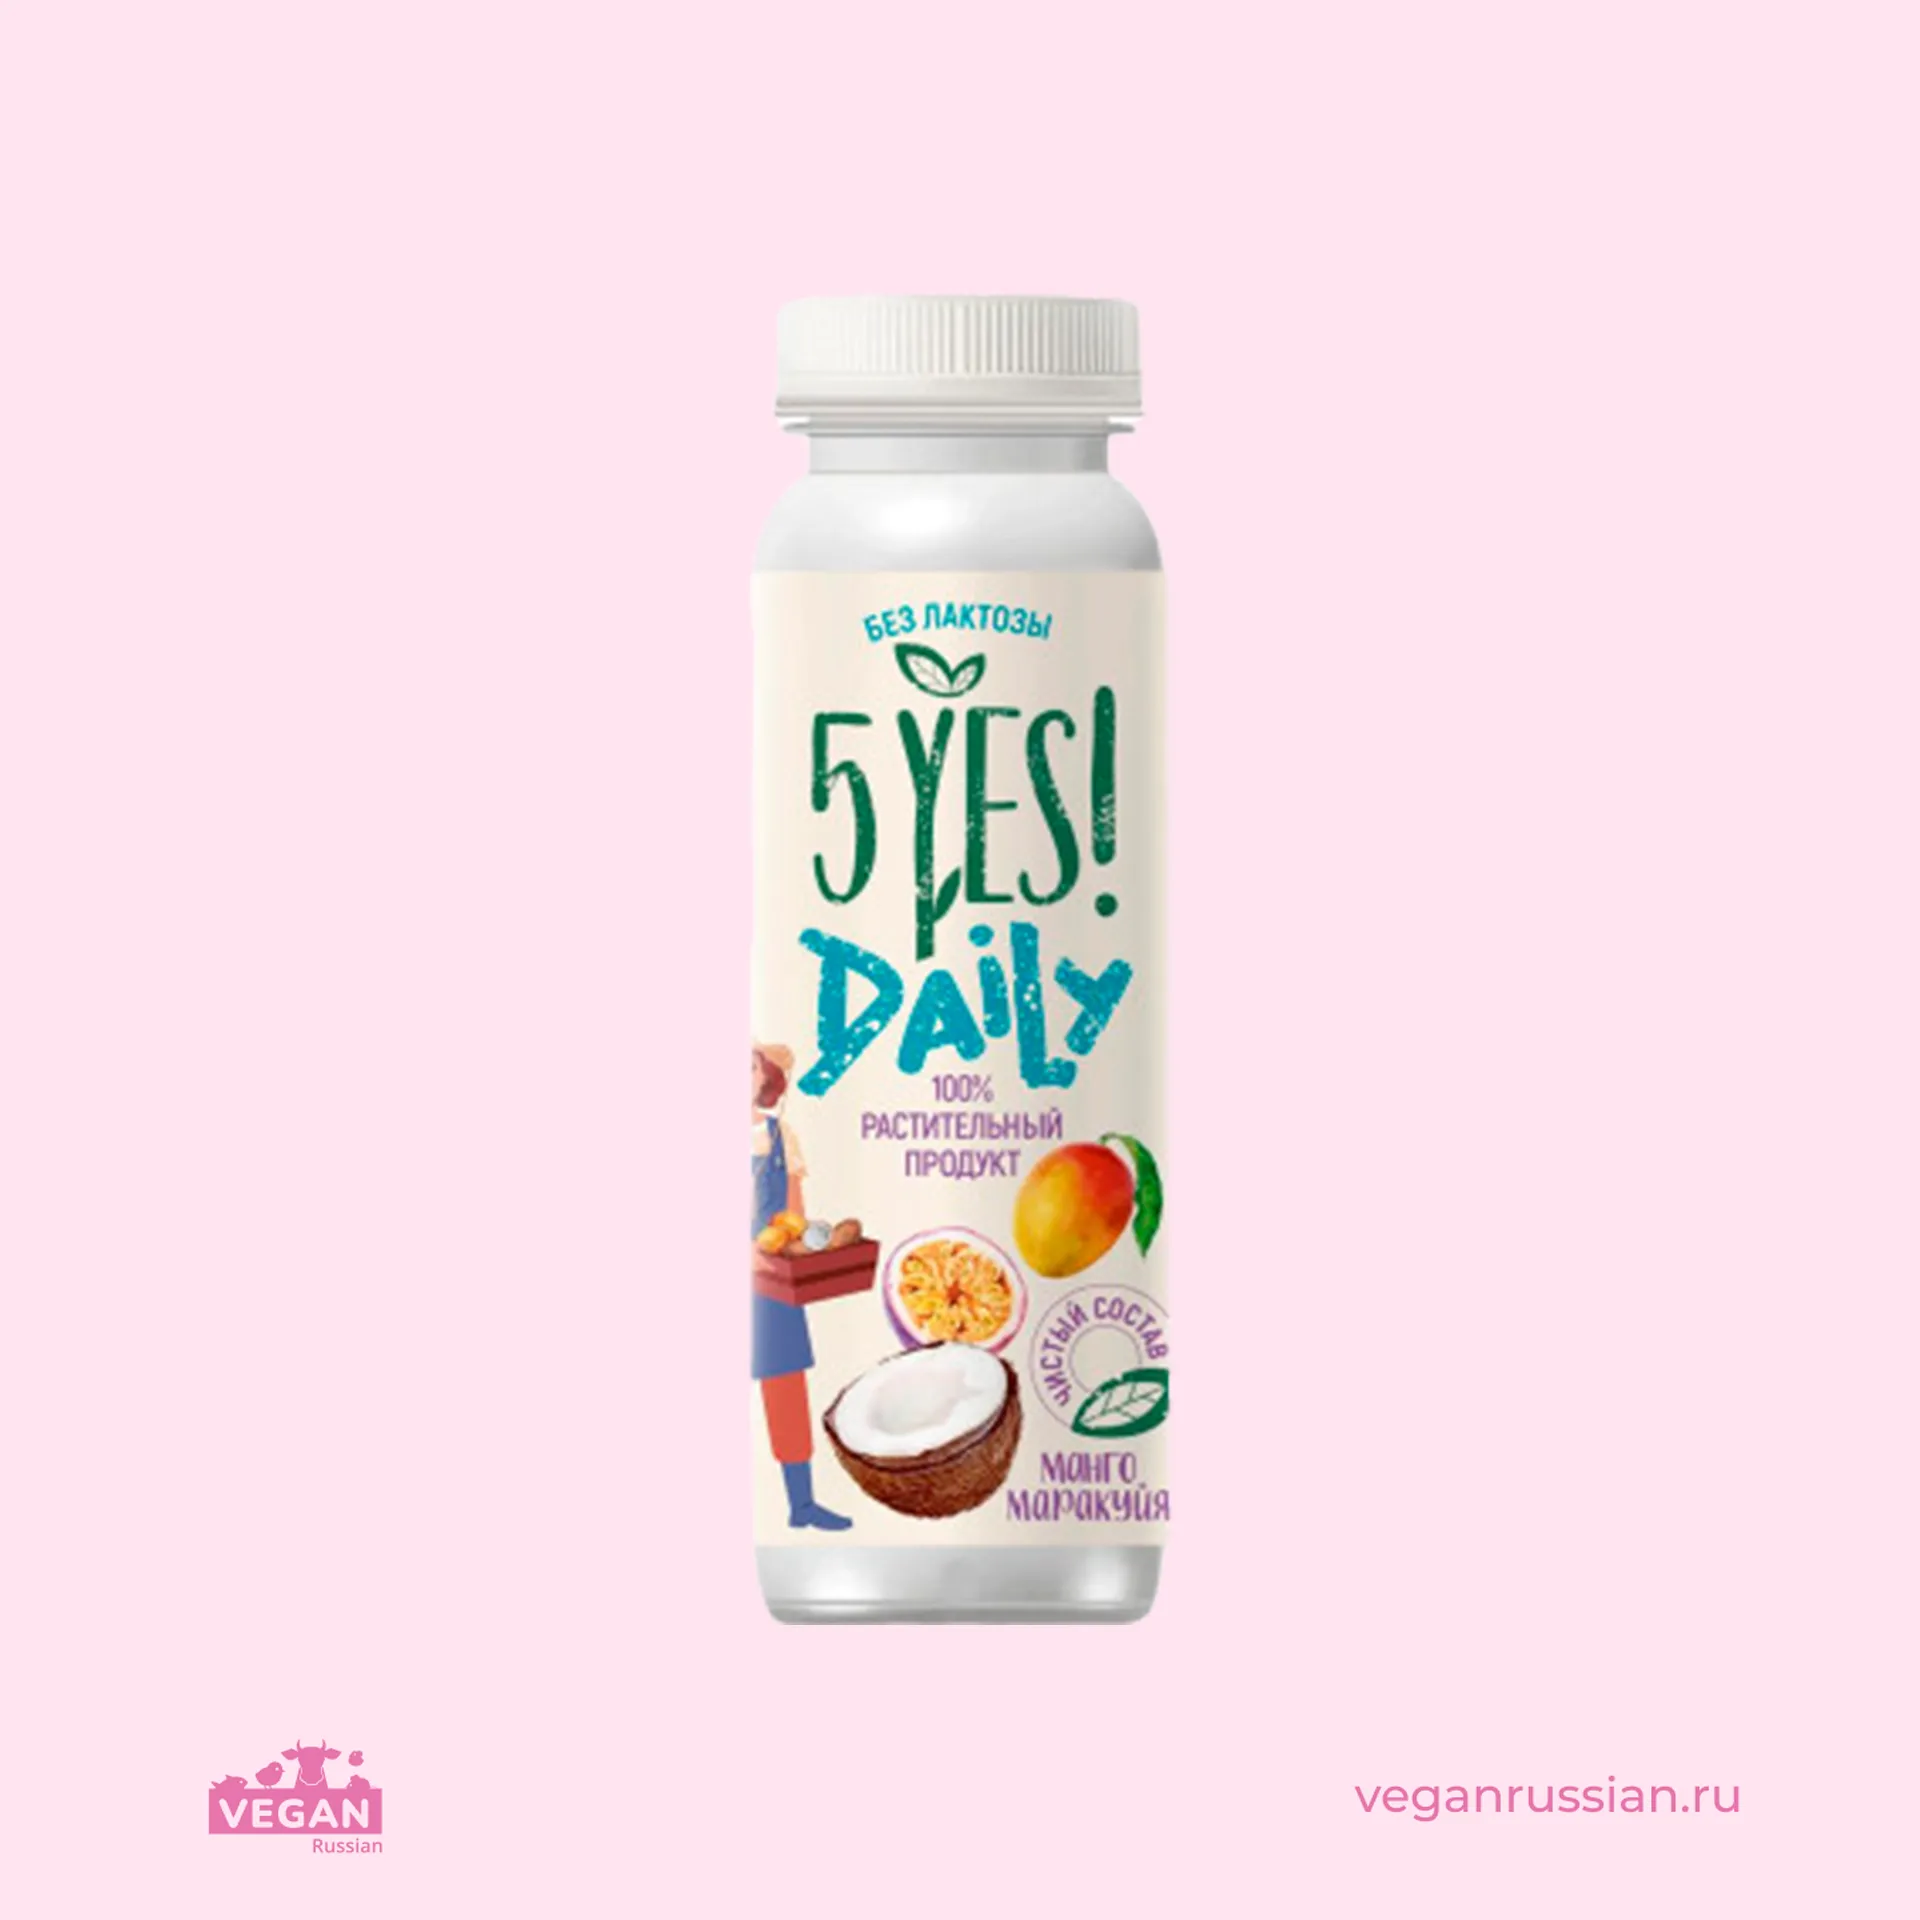 Питьевой йогурт кокосовый манго-маракуйя Daily 5YES! 210 г